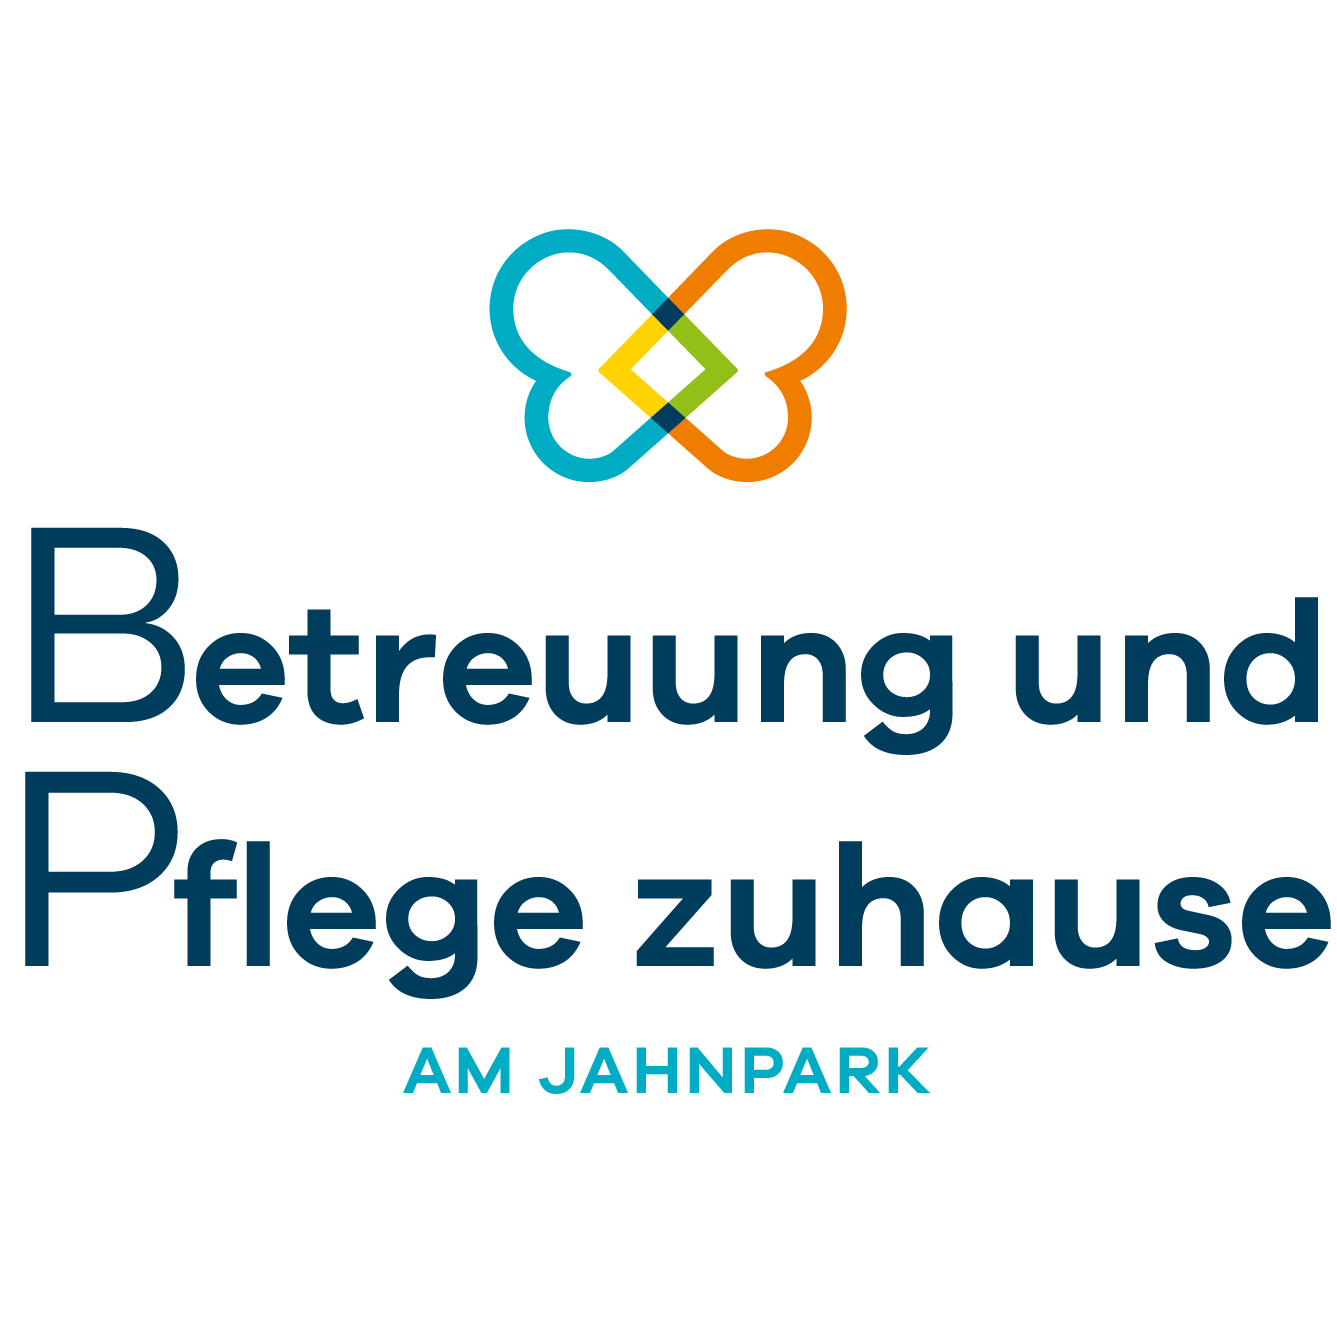 Betreuung und Pflege zuhause am Jahnpark Logo